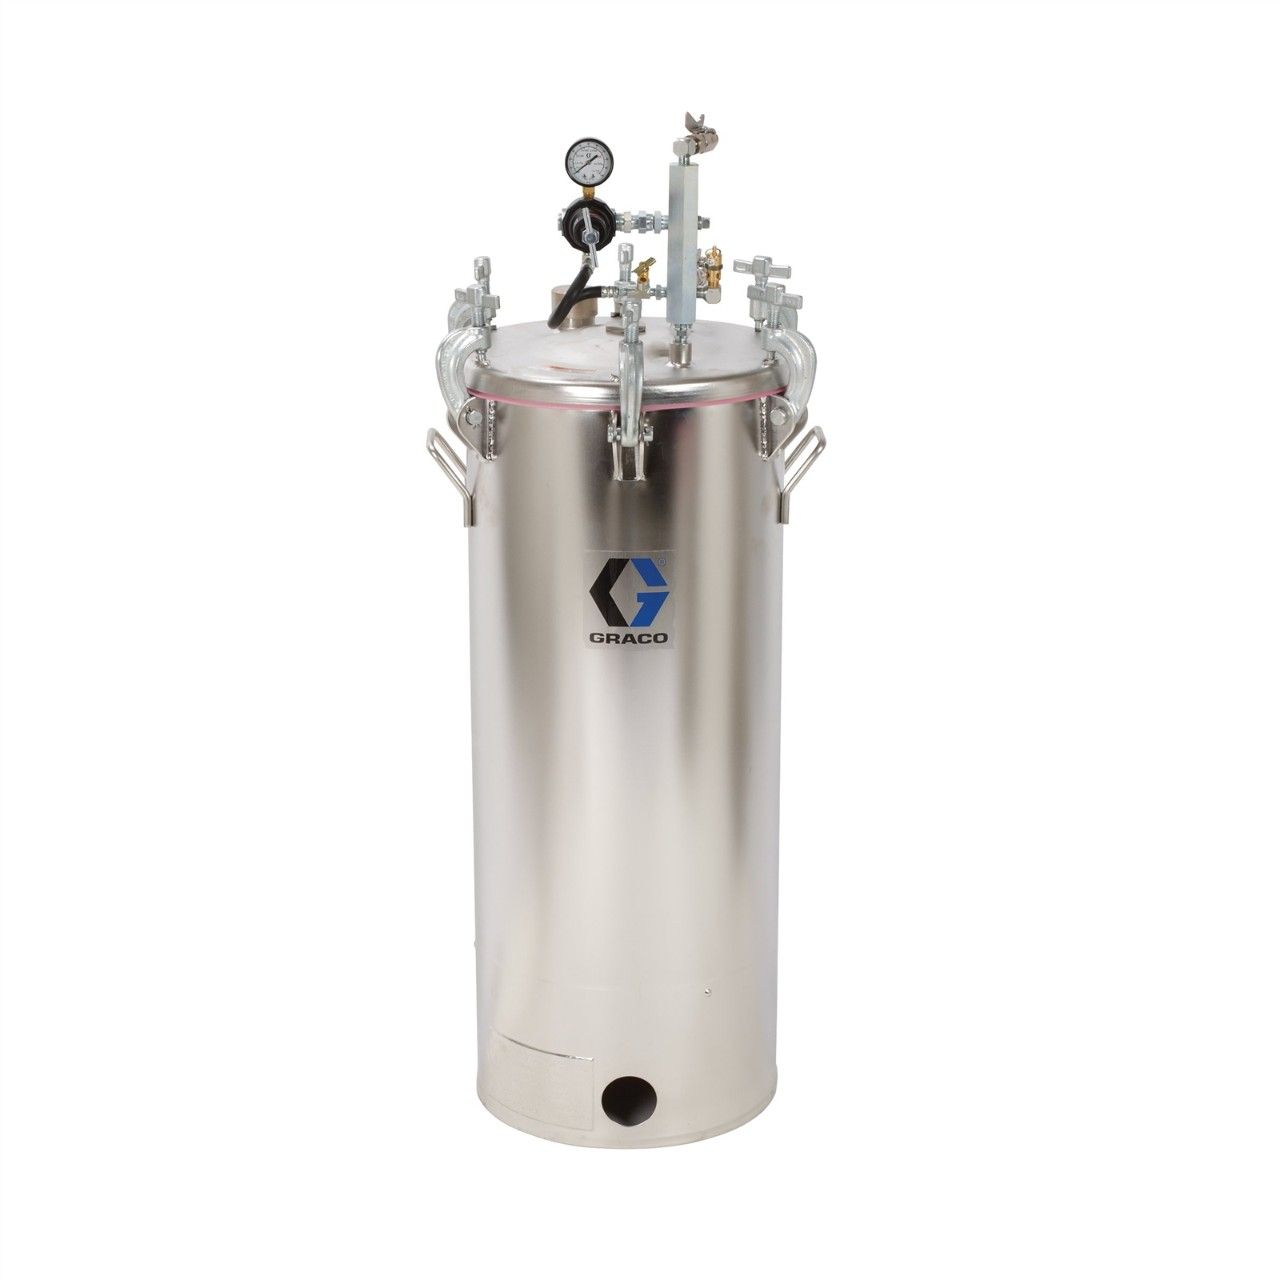 GRACO 15-Gallonen-Hochdruckbehälter (HVLP), eingestellt auf 100 psi - 236151